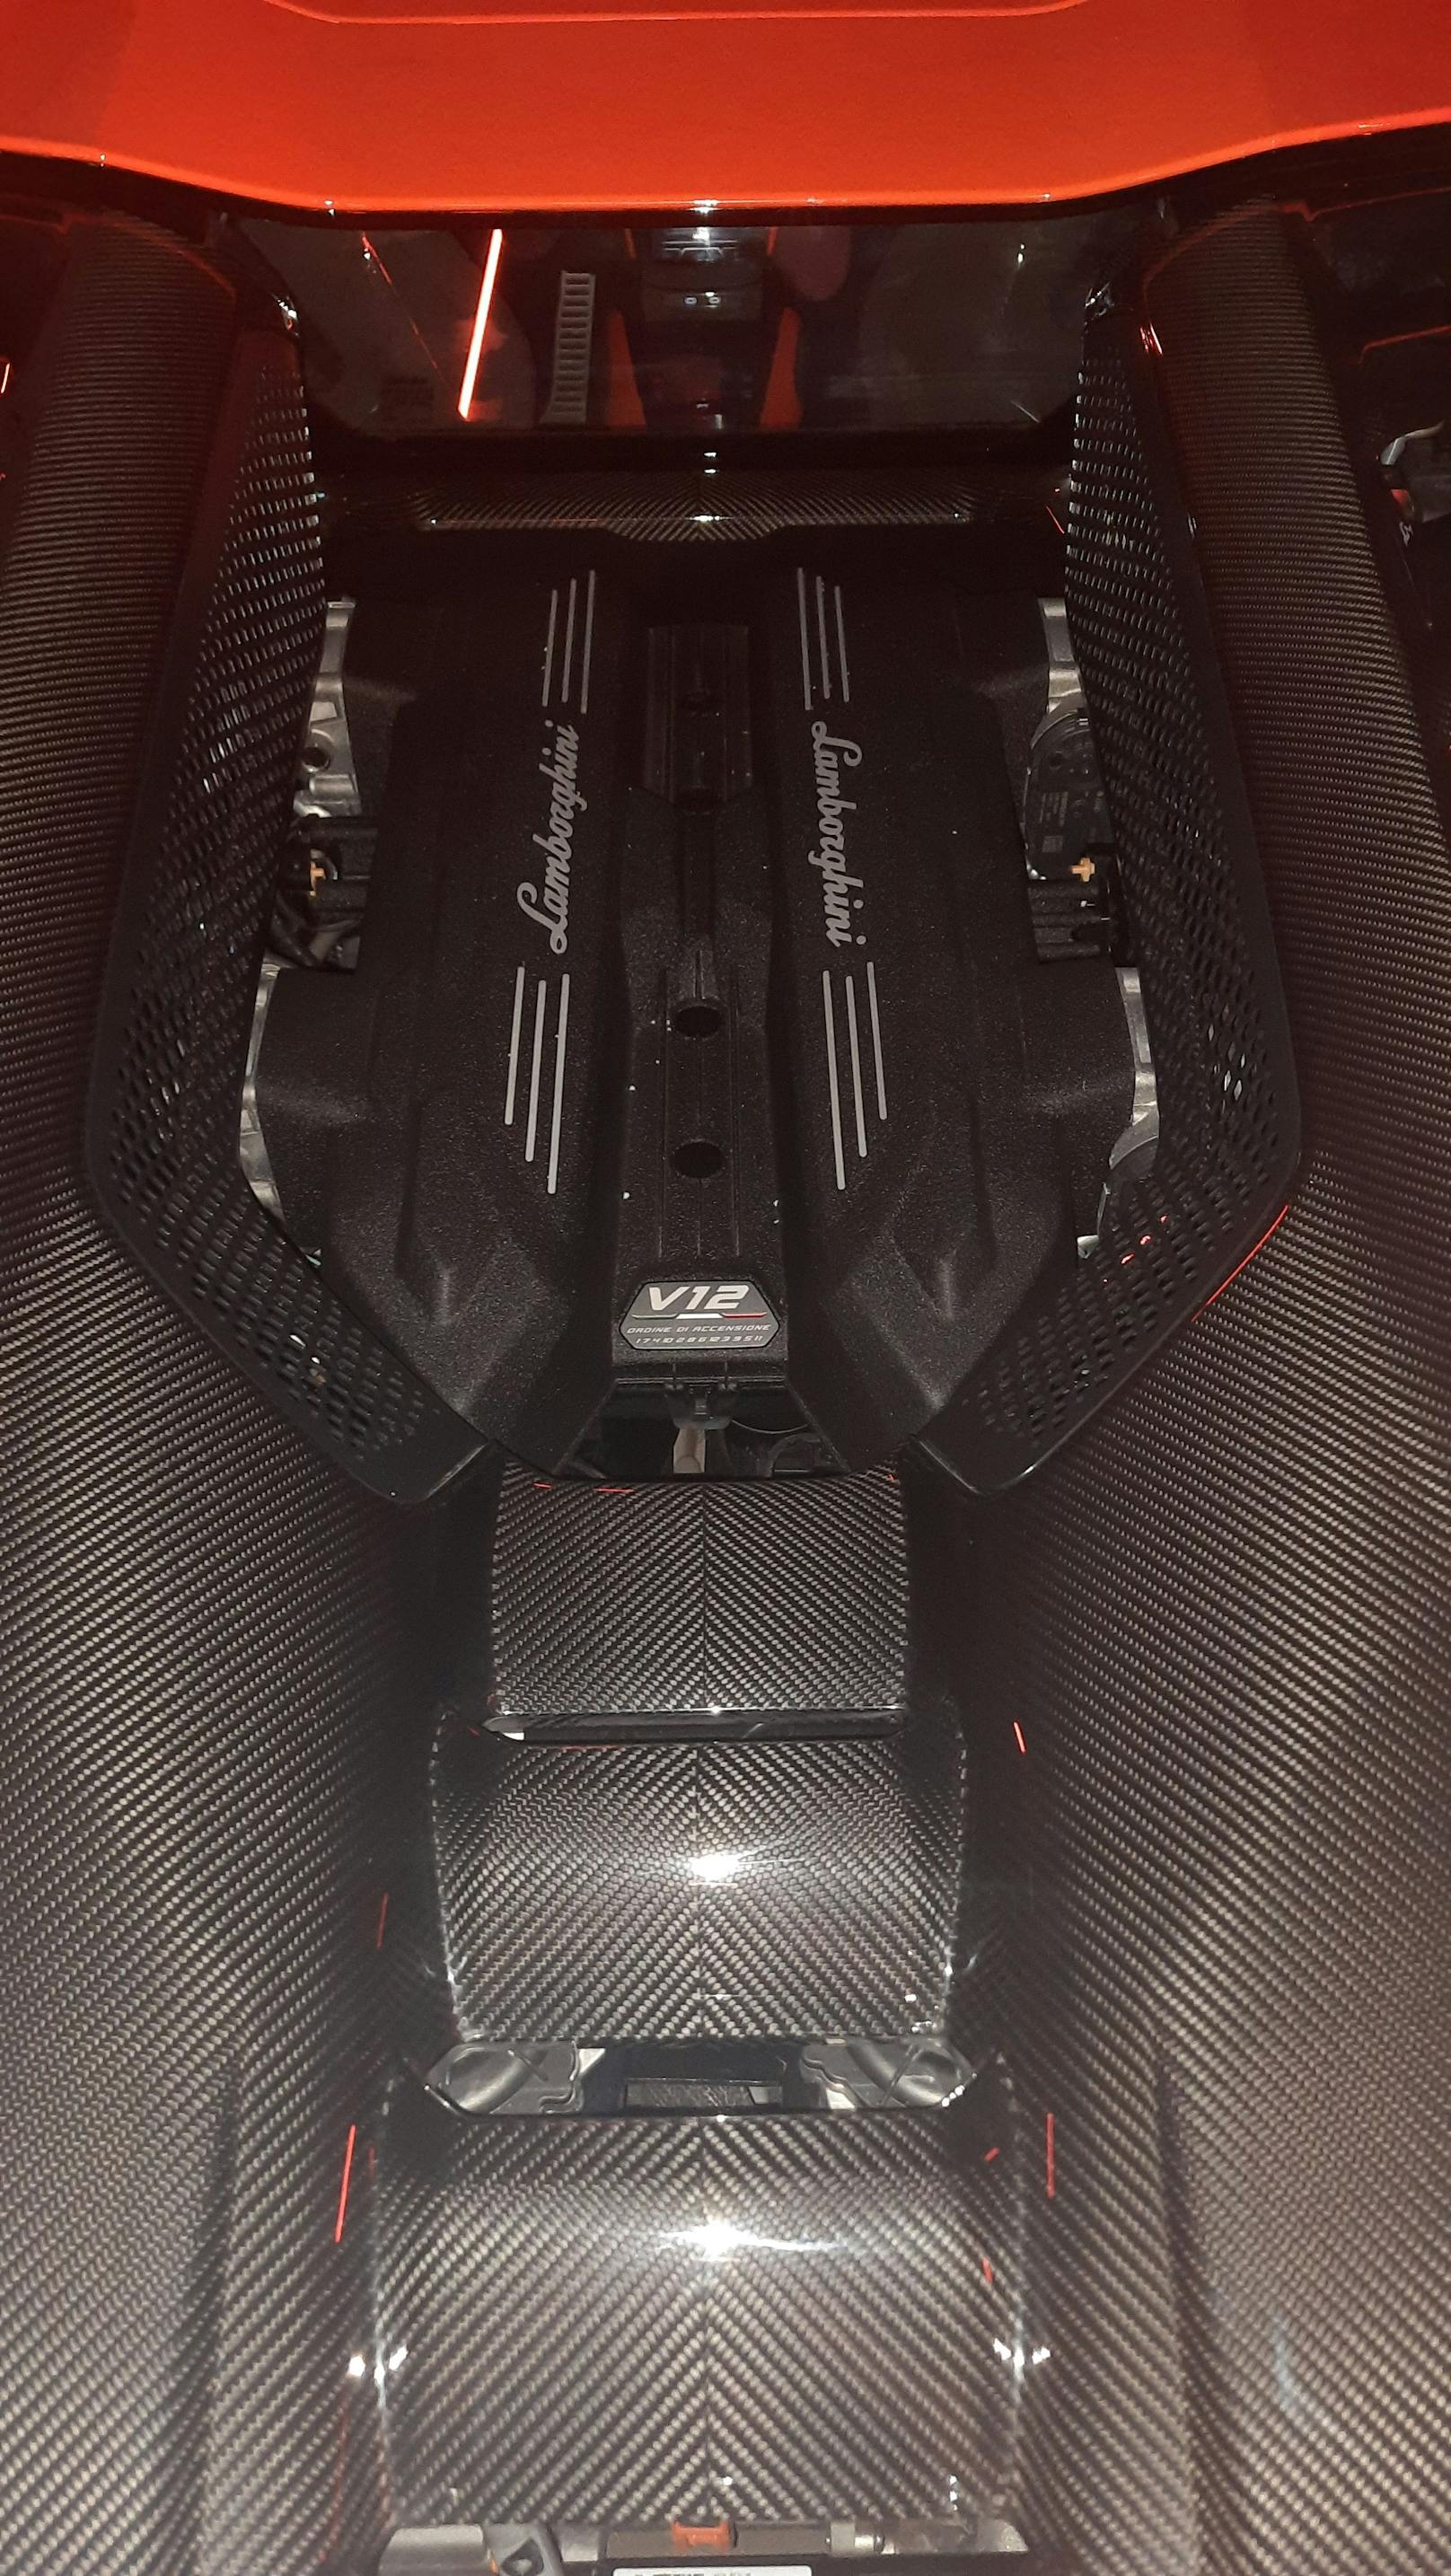 Der V12 mit Hybrid-Technik wird offen zur Schau gestellt.